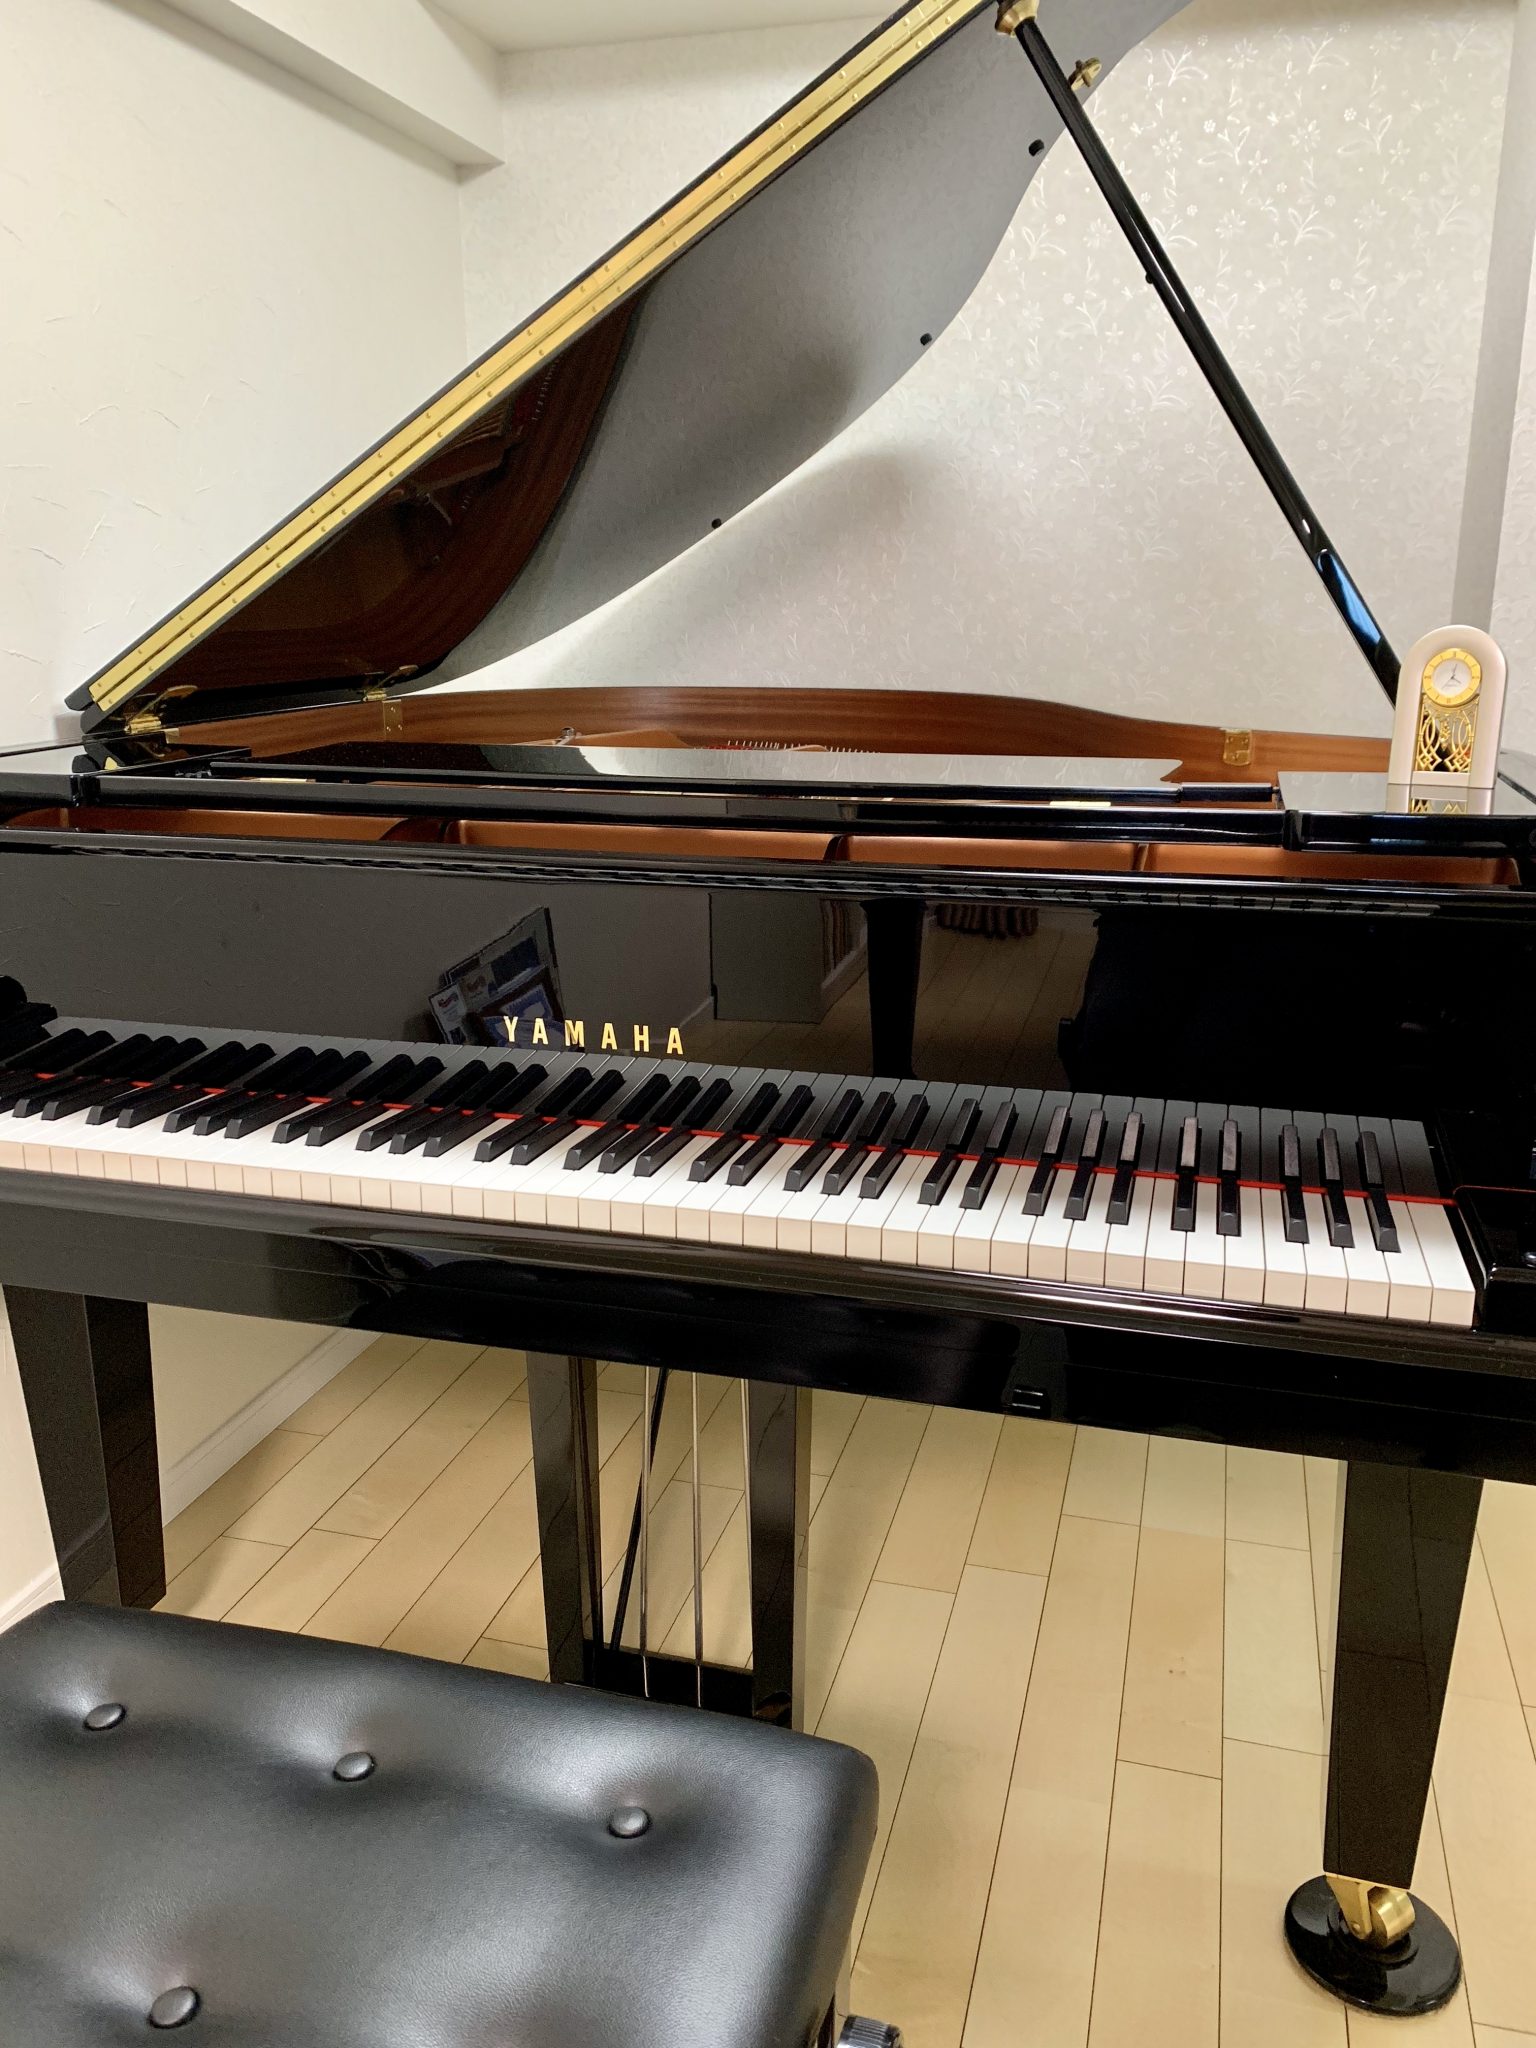 ヤマハグランドピアノ C1x 購入後2ヶ月経っての感想 皆川ピアノスタジオ 横浜市港南区上大岡東のピアノ教室